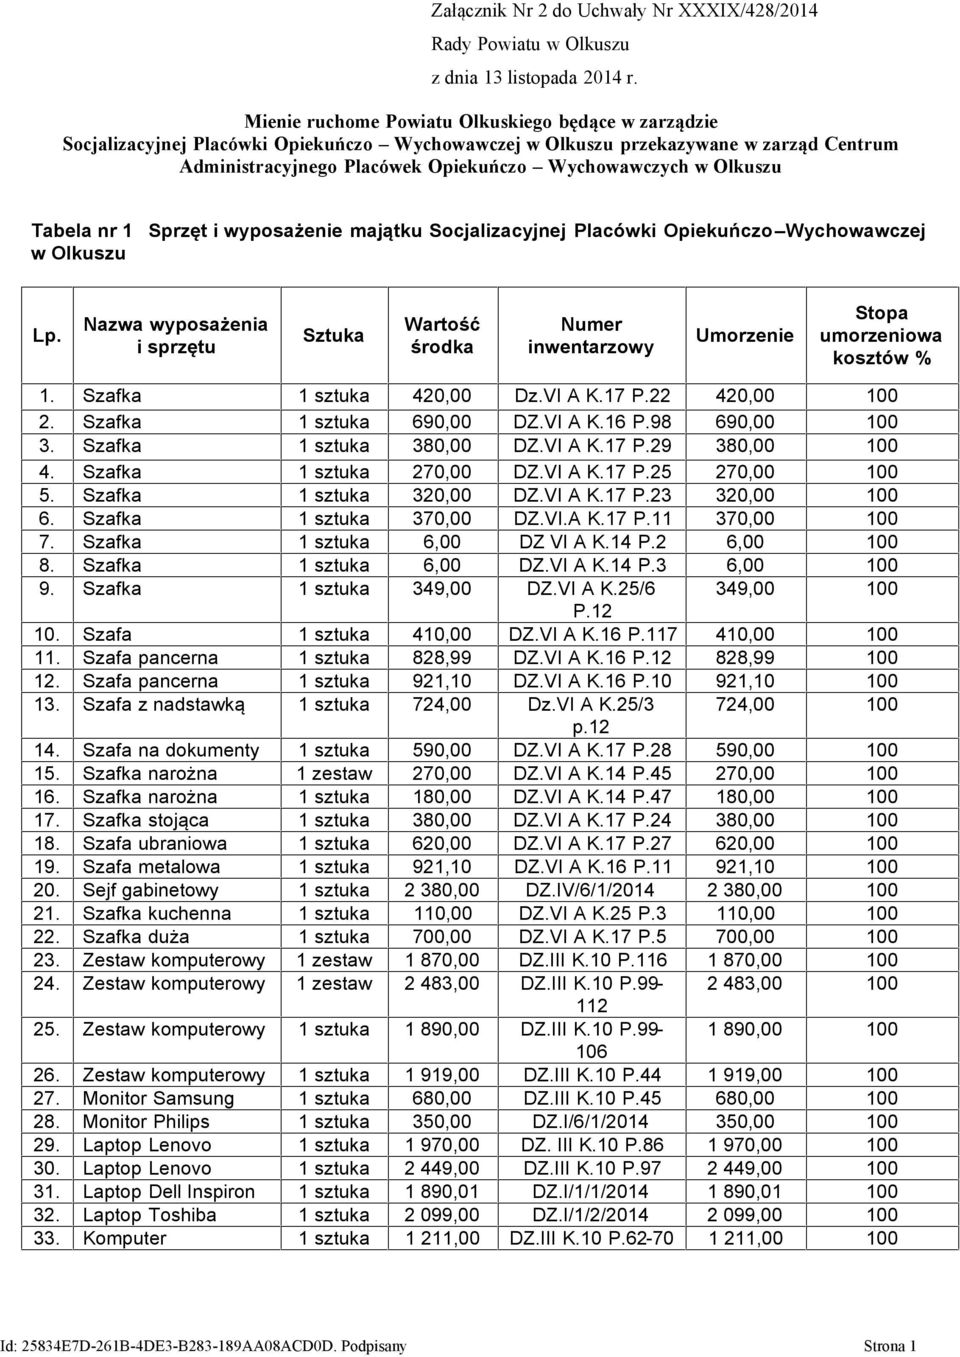 Olkuszu Tabela nr 1 w Olkuszu Sprzęt i wyposażenie majątku Socjalizacyjnej Placówki Opiekuńczo Wychowawczej Lp.